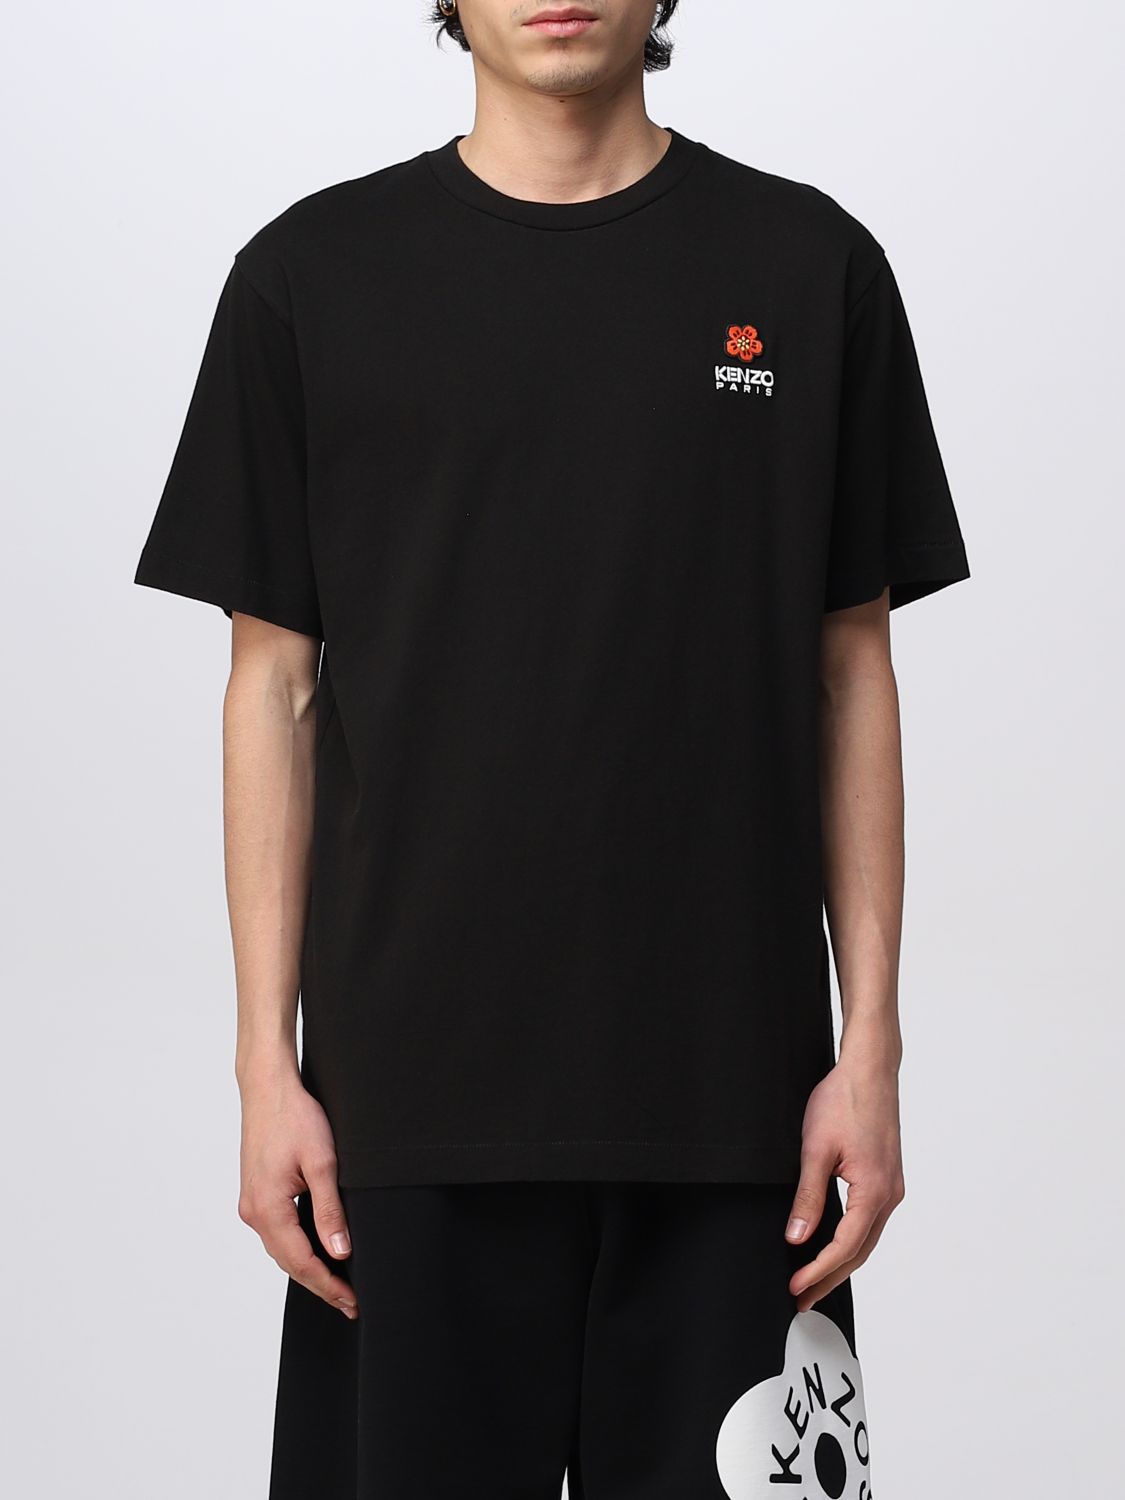 T-shirt Kenzo: T-shirt Boke Flower Kenzo in cotone nero 1